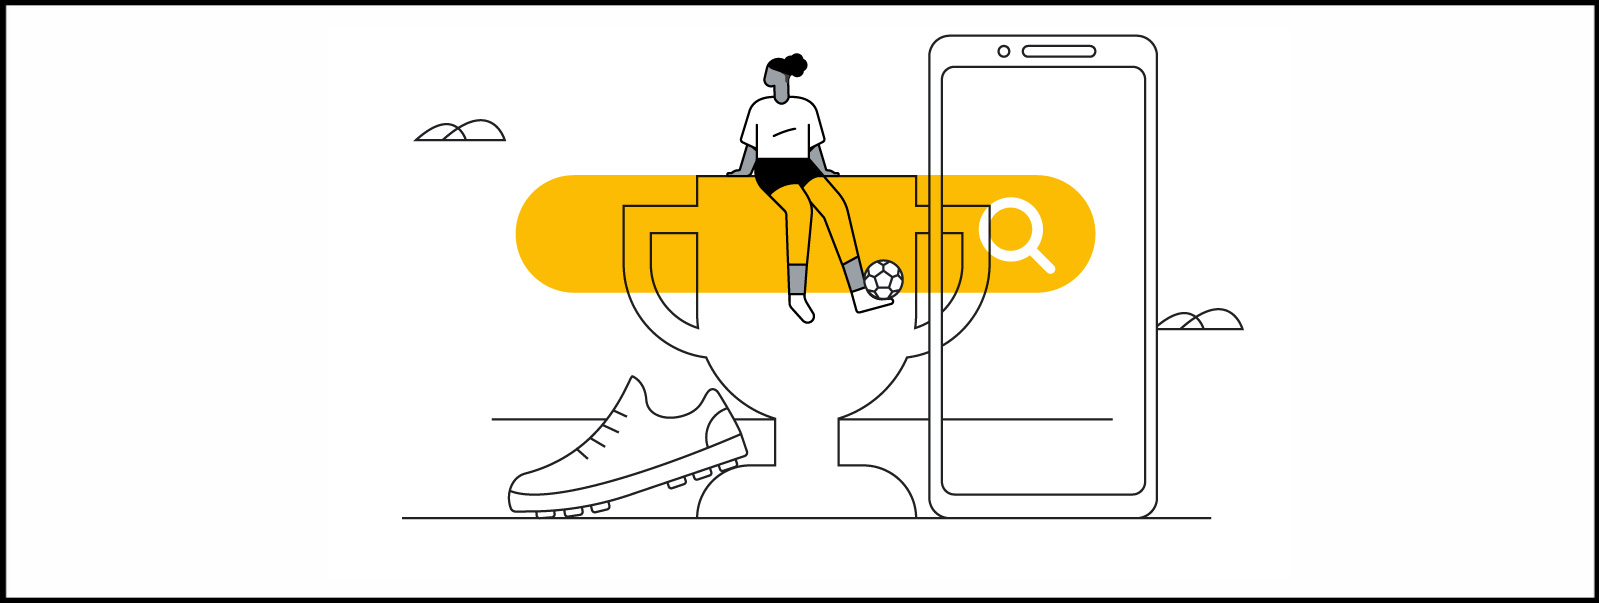 Una pantalla de teléfono móvil a la derecha, detrás de una gran barra de Buscador en amarillo. A la izquierda, una zapatilla de fútbol y una copa. Sobre esta, una mujer sentada, con equipo deportivo y una pelota de fútbol en el pie.